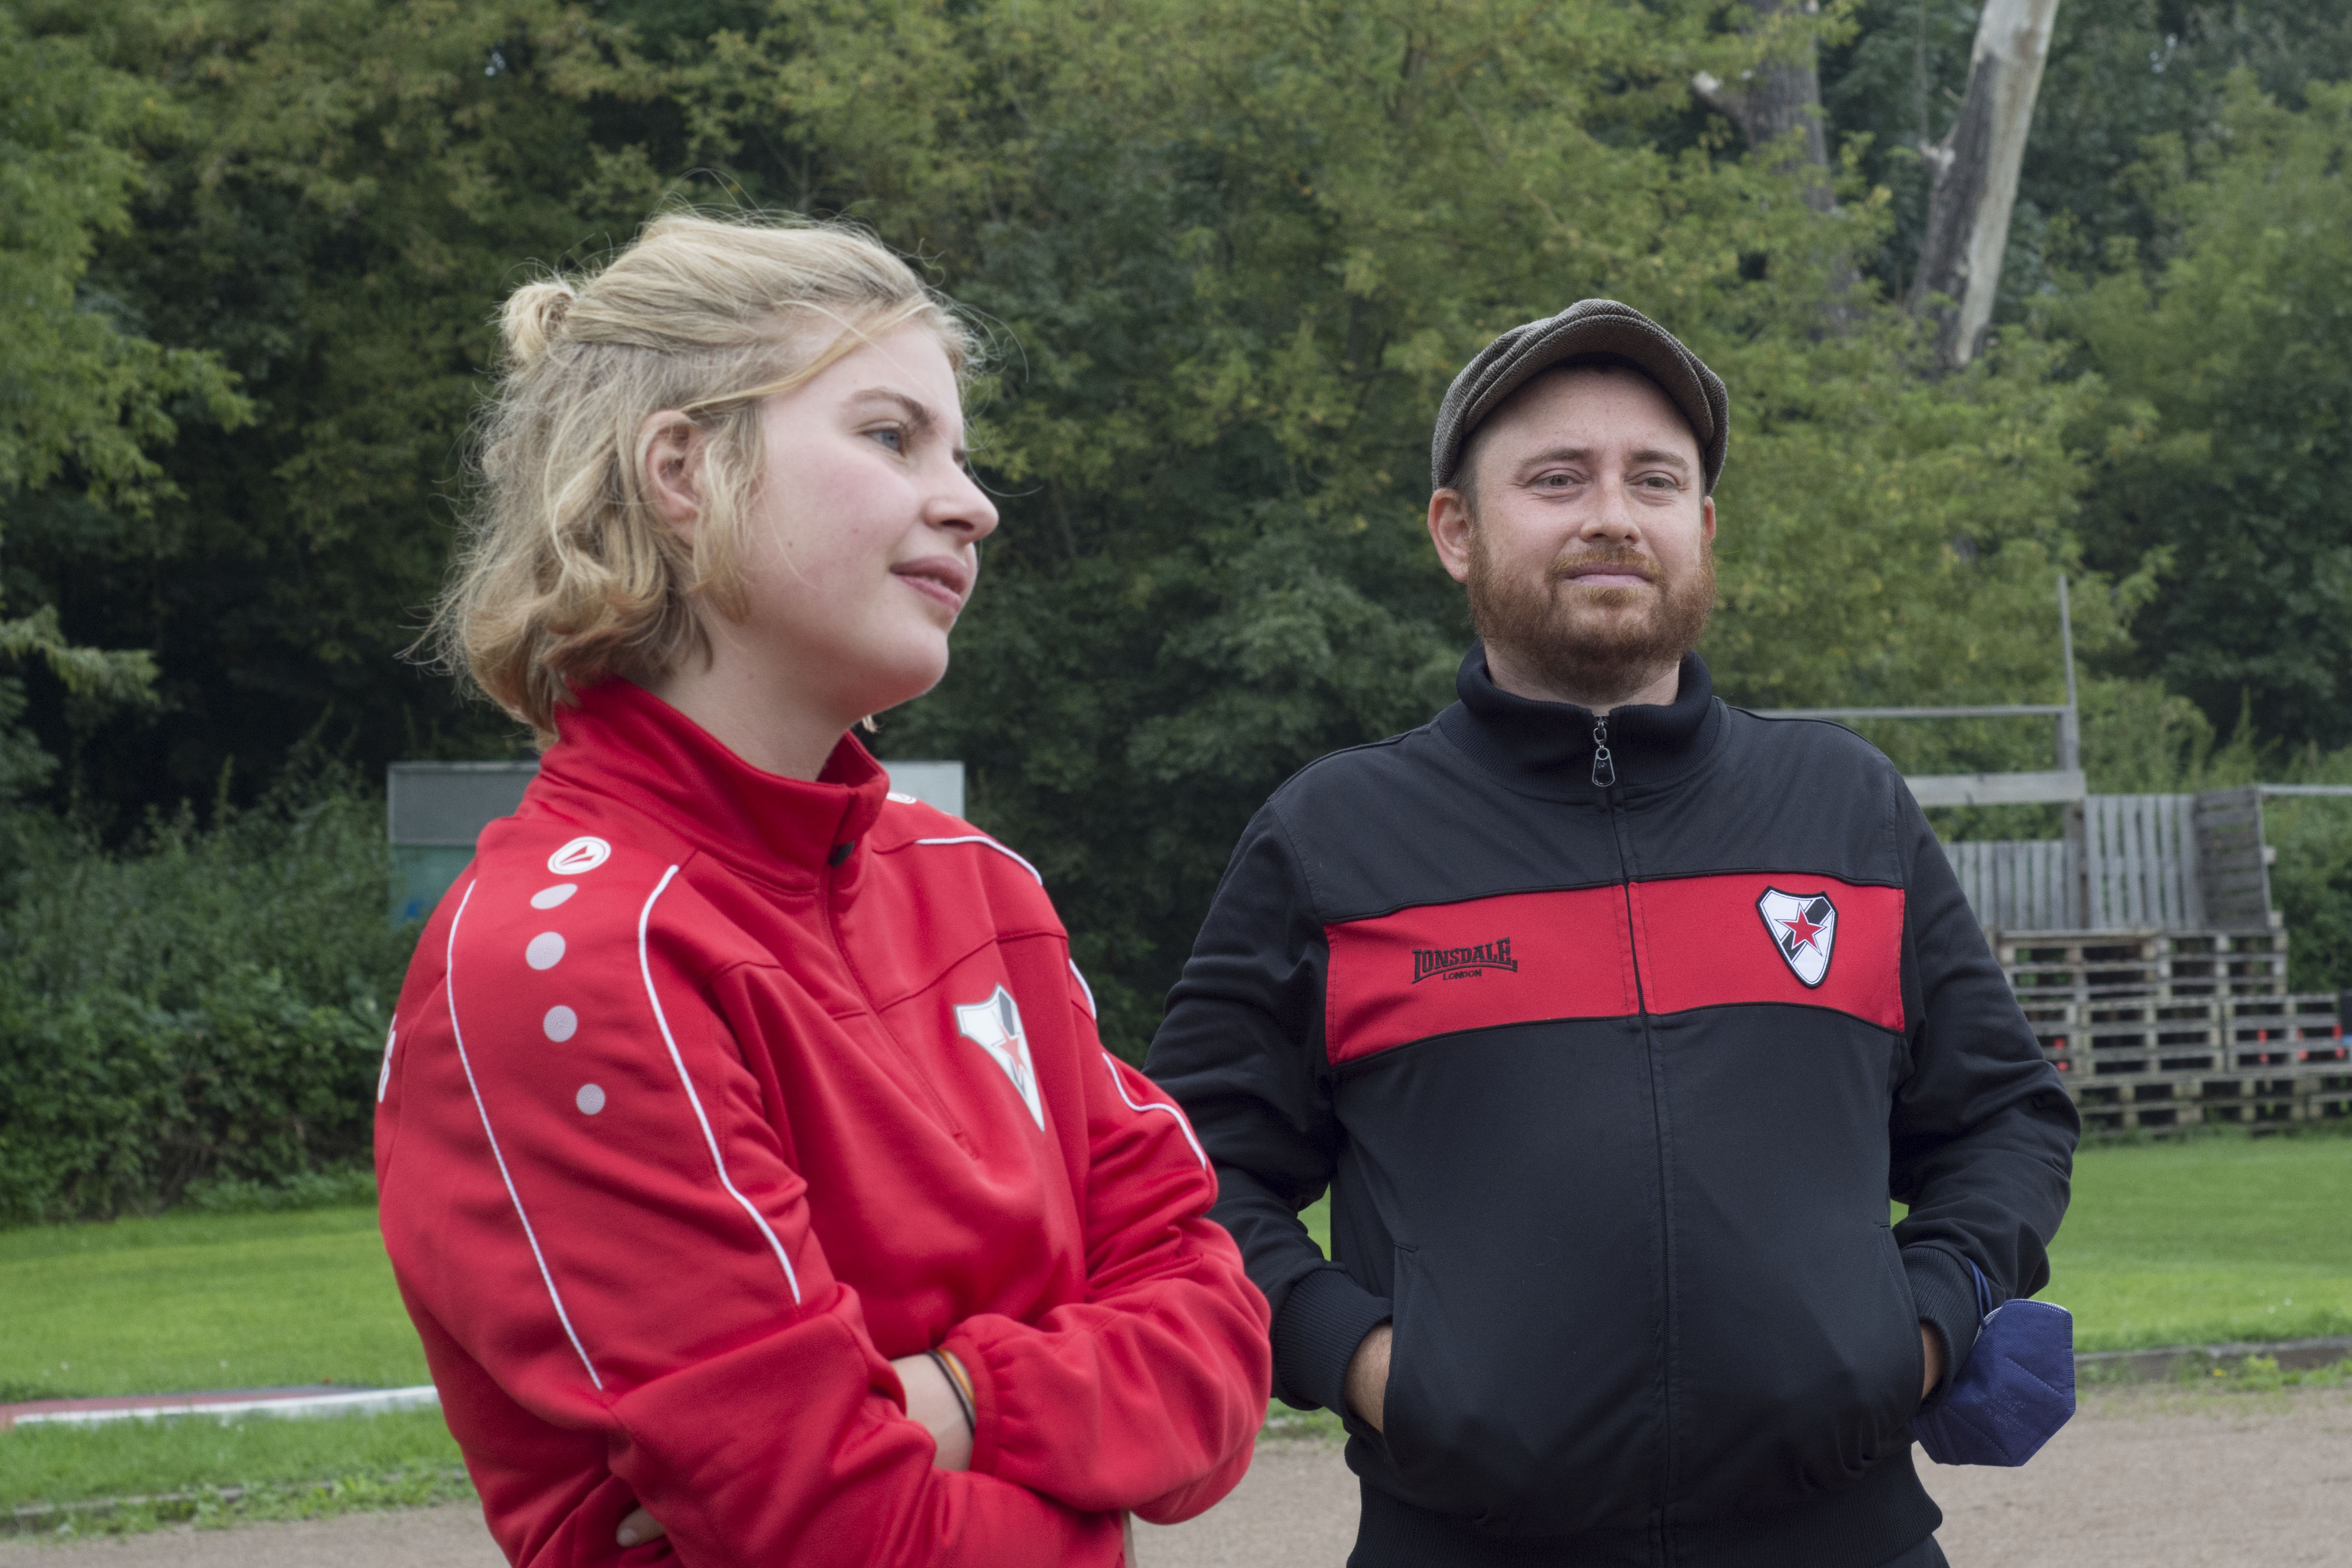   Parkverbot auf dem Rasen | Thekla Funke und Johannes Duschka trainieren die D-Jugend-Mädchen vom Roten Stern Leipzig – und wollen Fußball kindgerecht vermitteln  